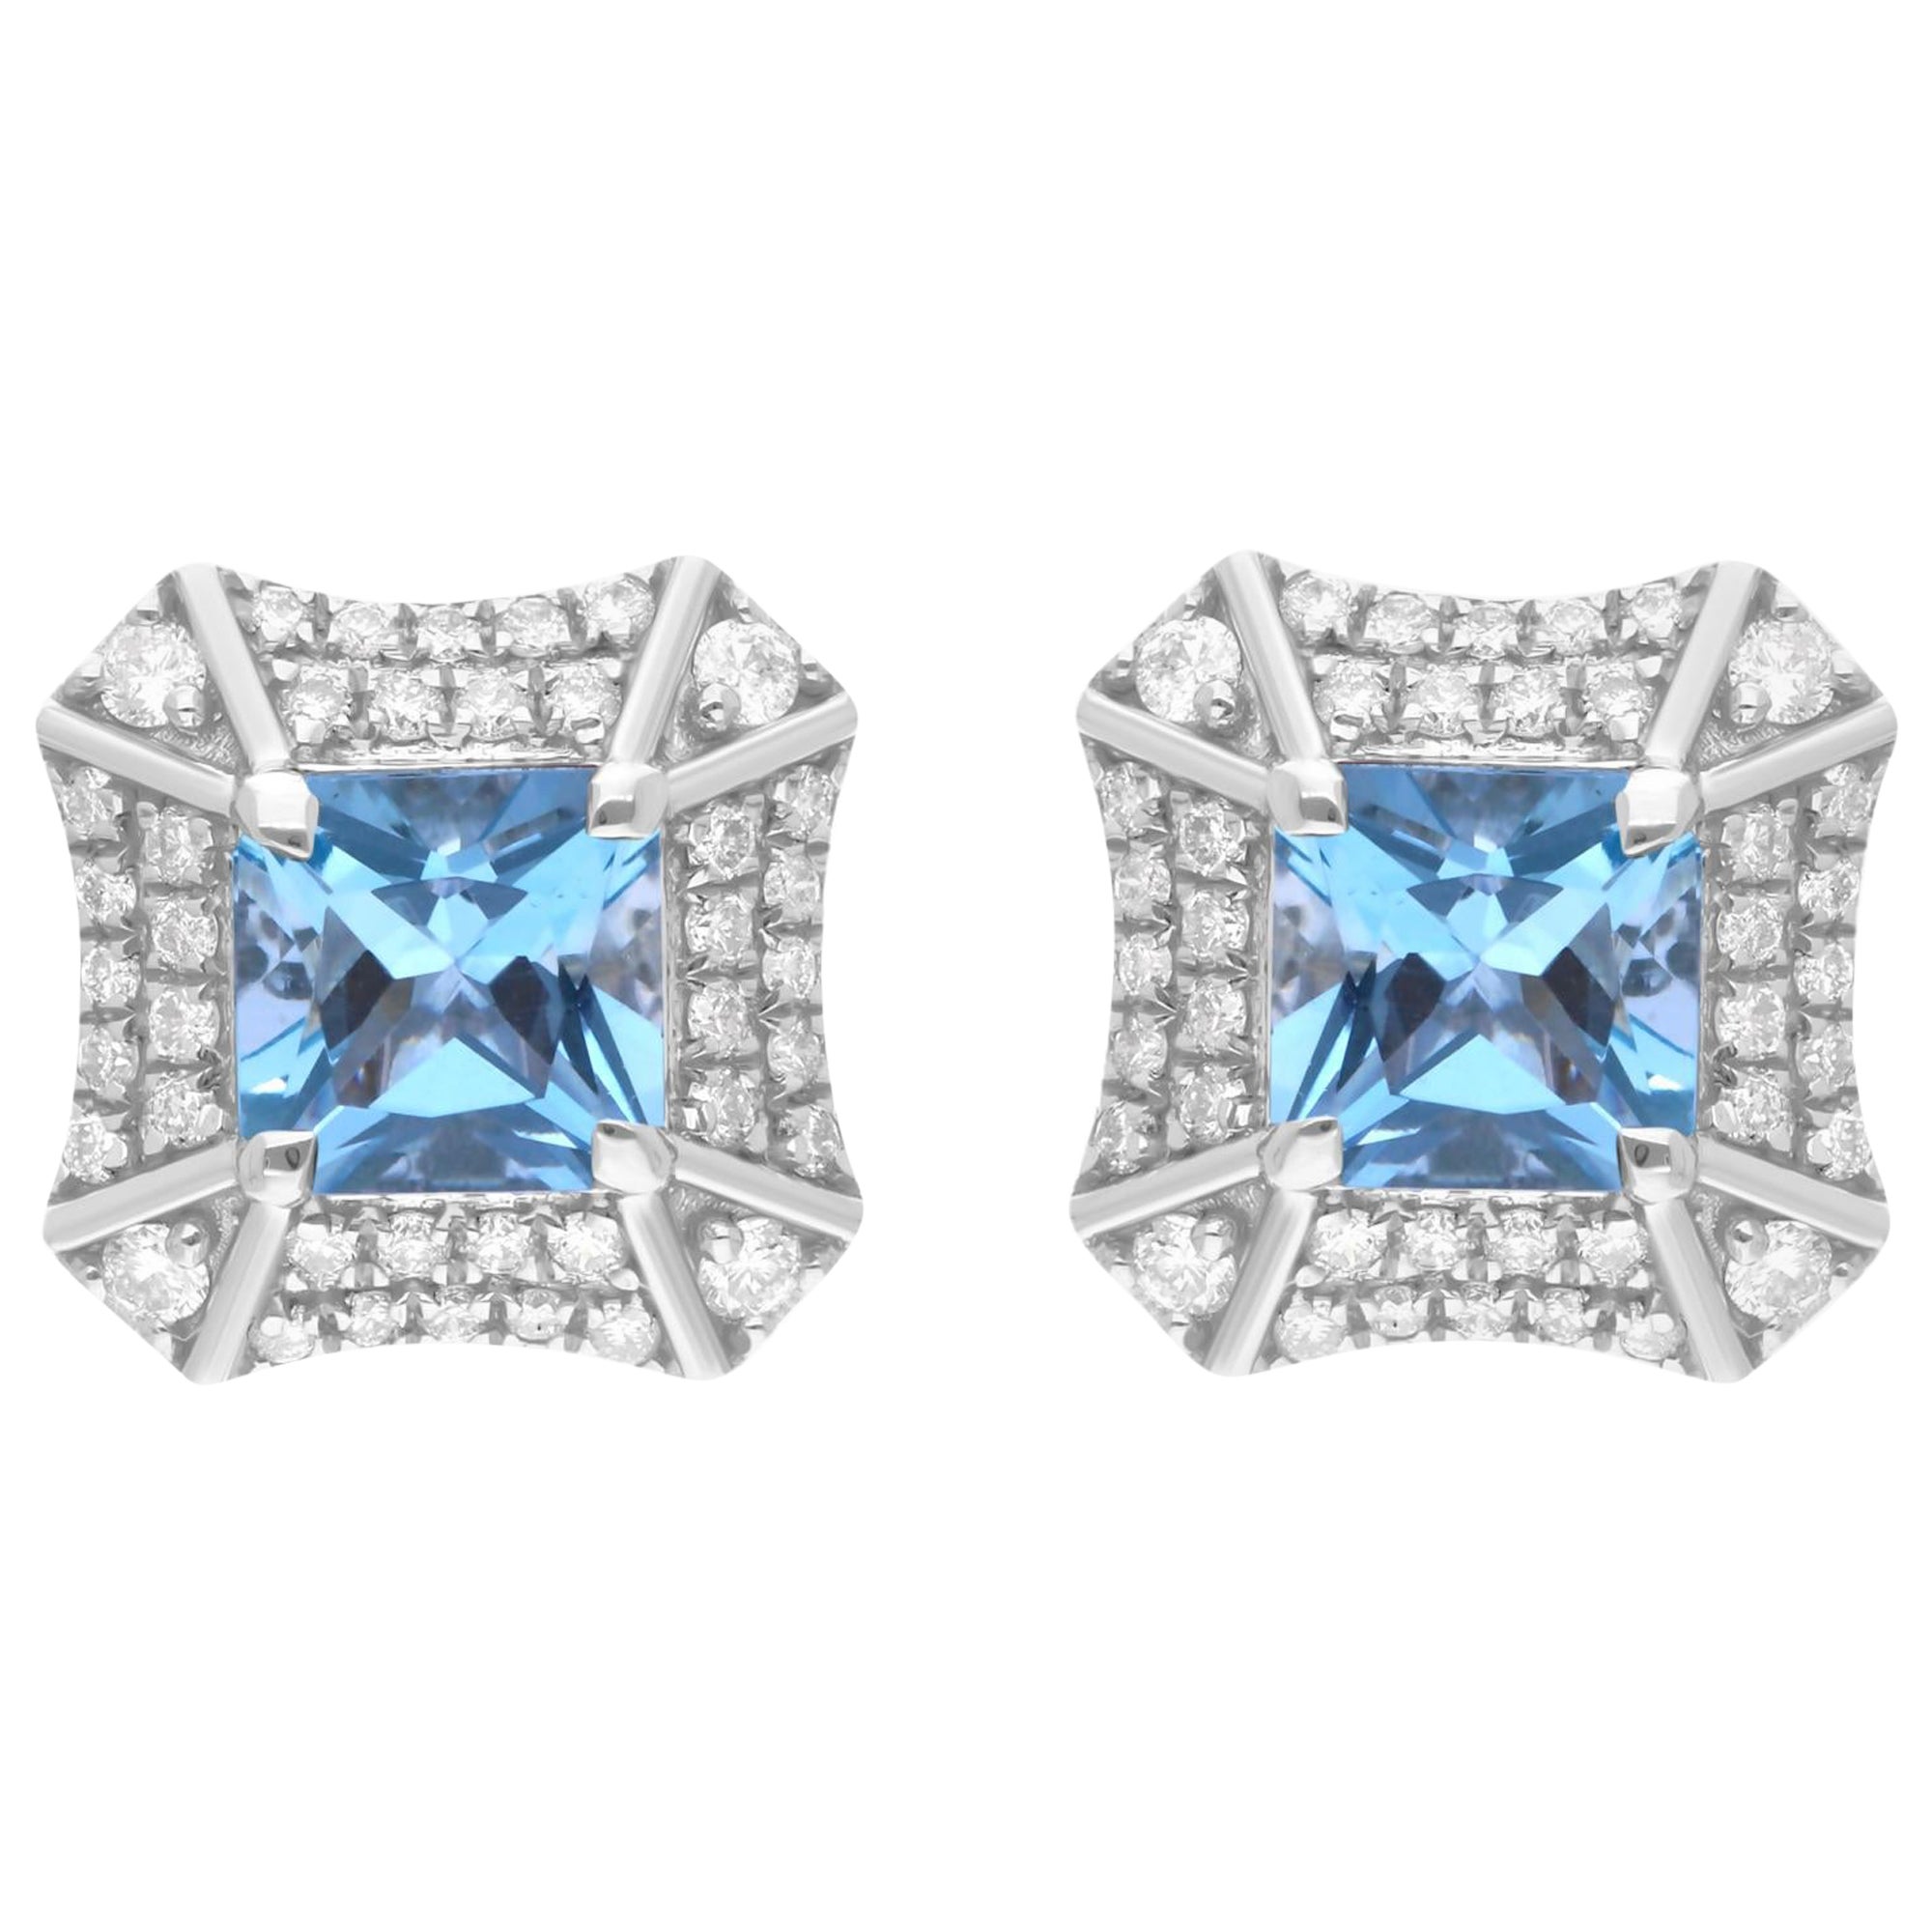 Aquamarine Gemstone Stud Earrings Diamond 18 Karat White Gold Handmade Jewelry